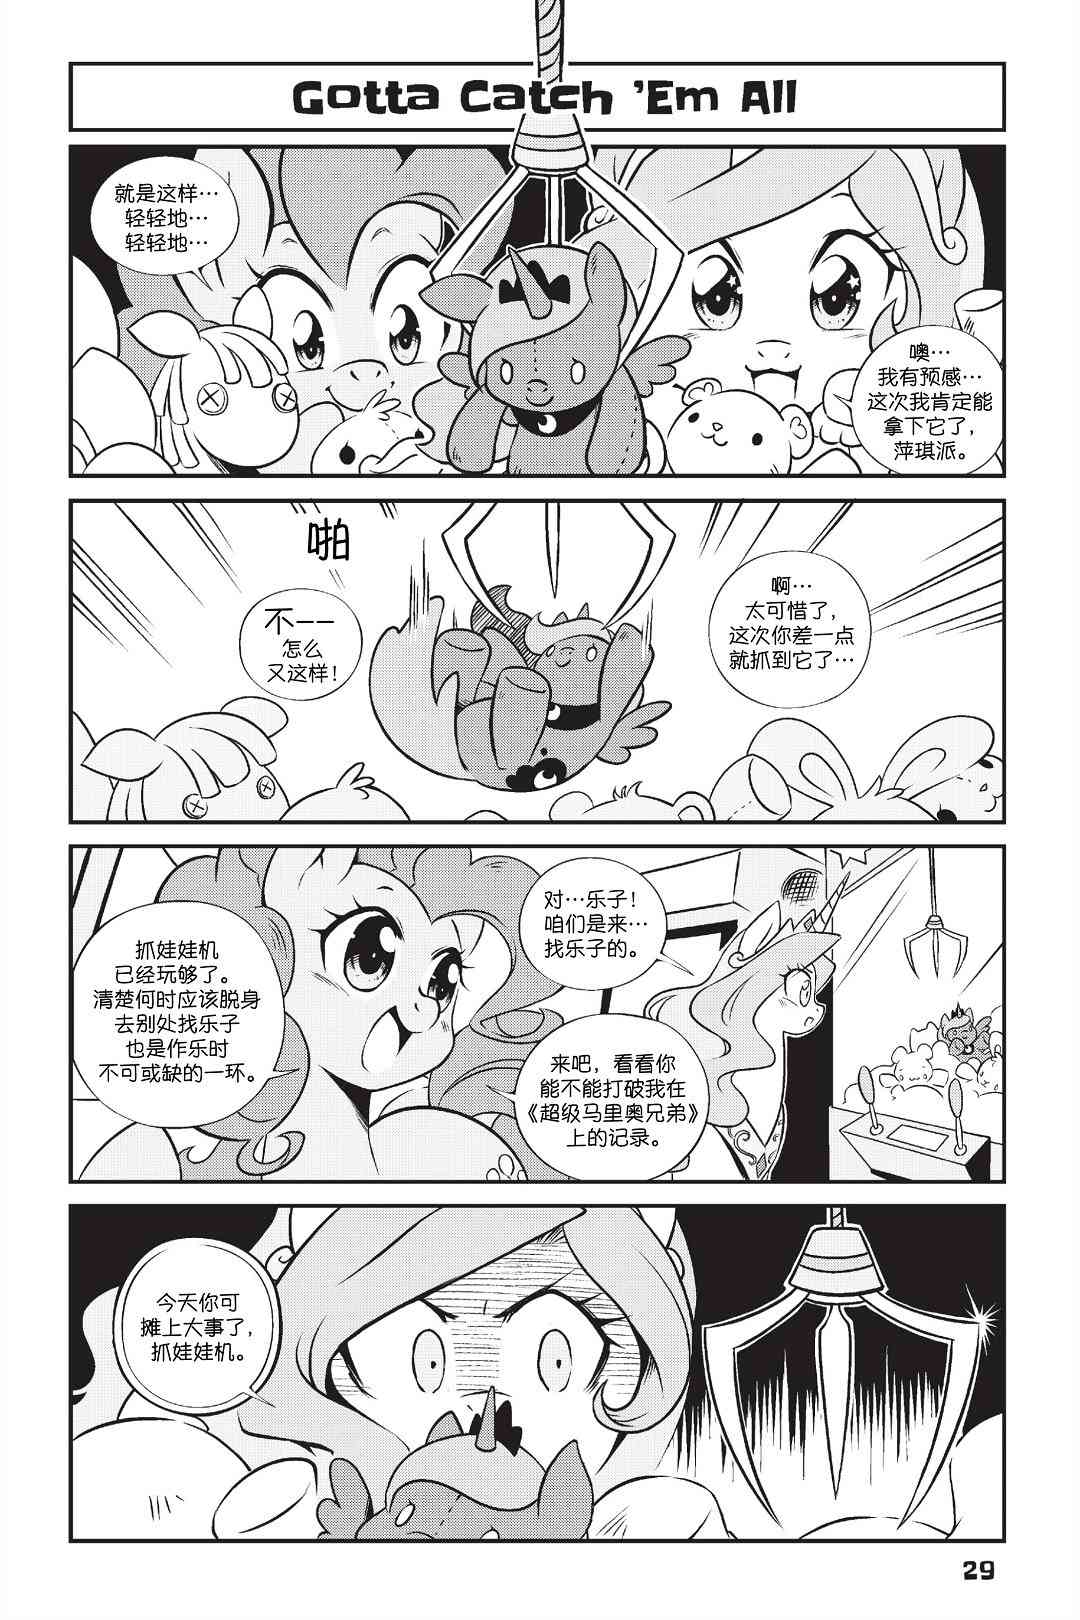 彩虹小馬G4：友情就是魔法 - 新日版漫畫第01部第02話 - 1